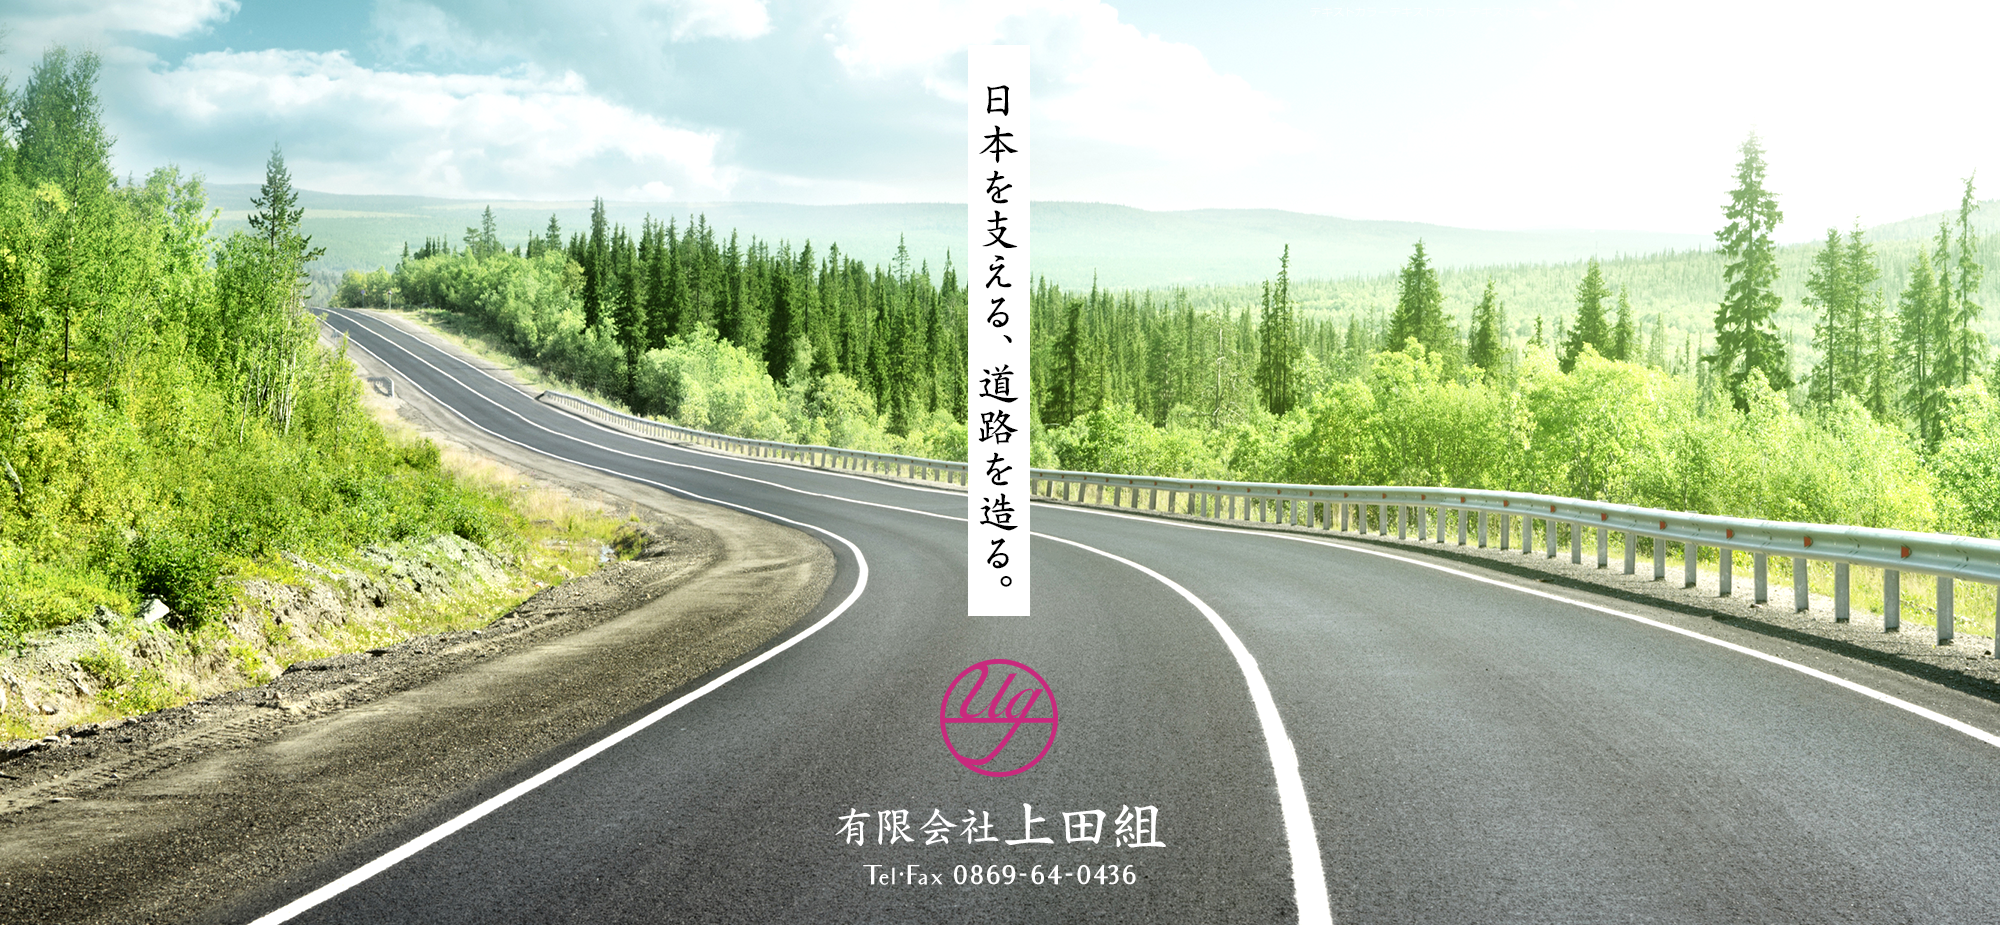 日本を支える、道路を造る。